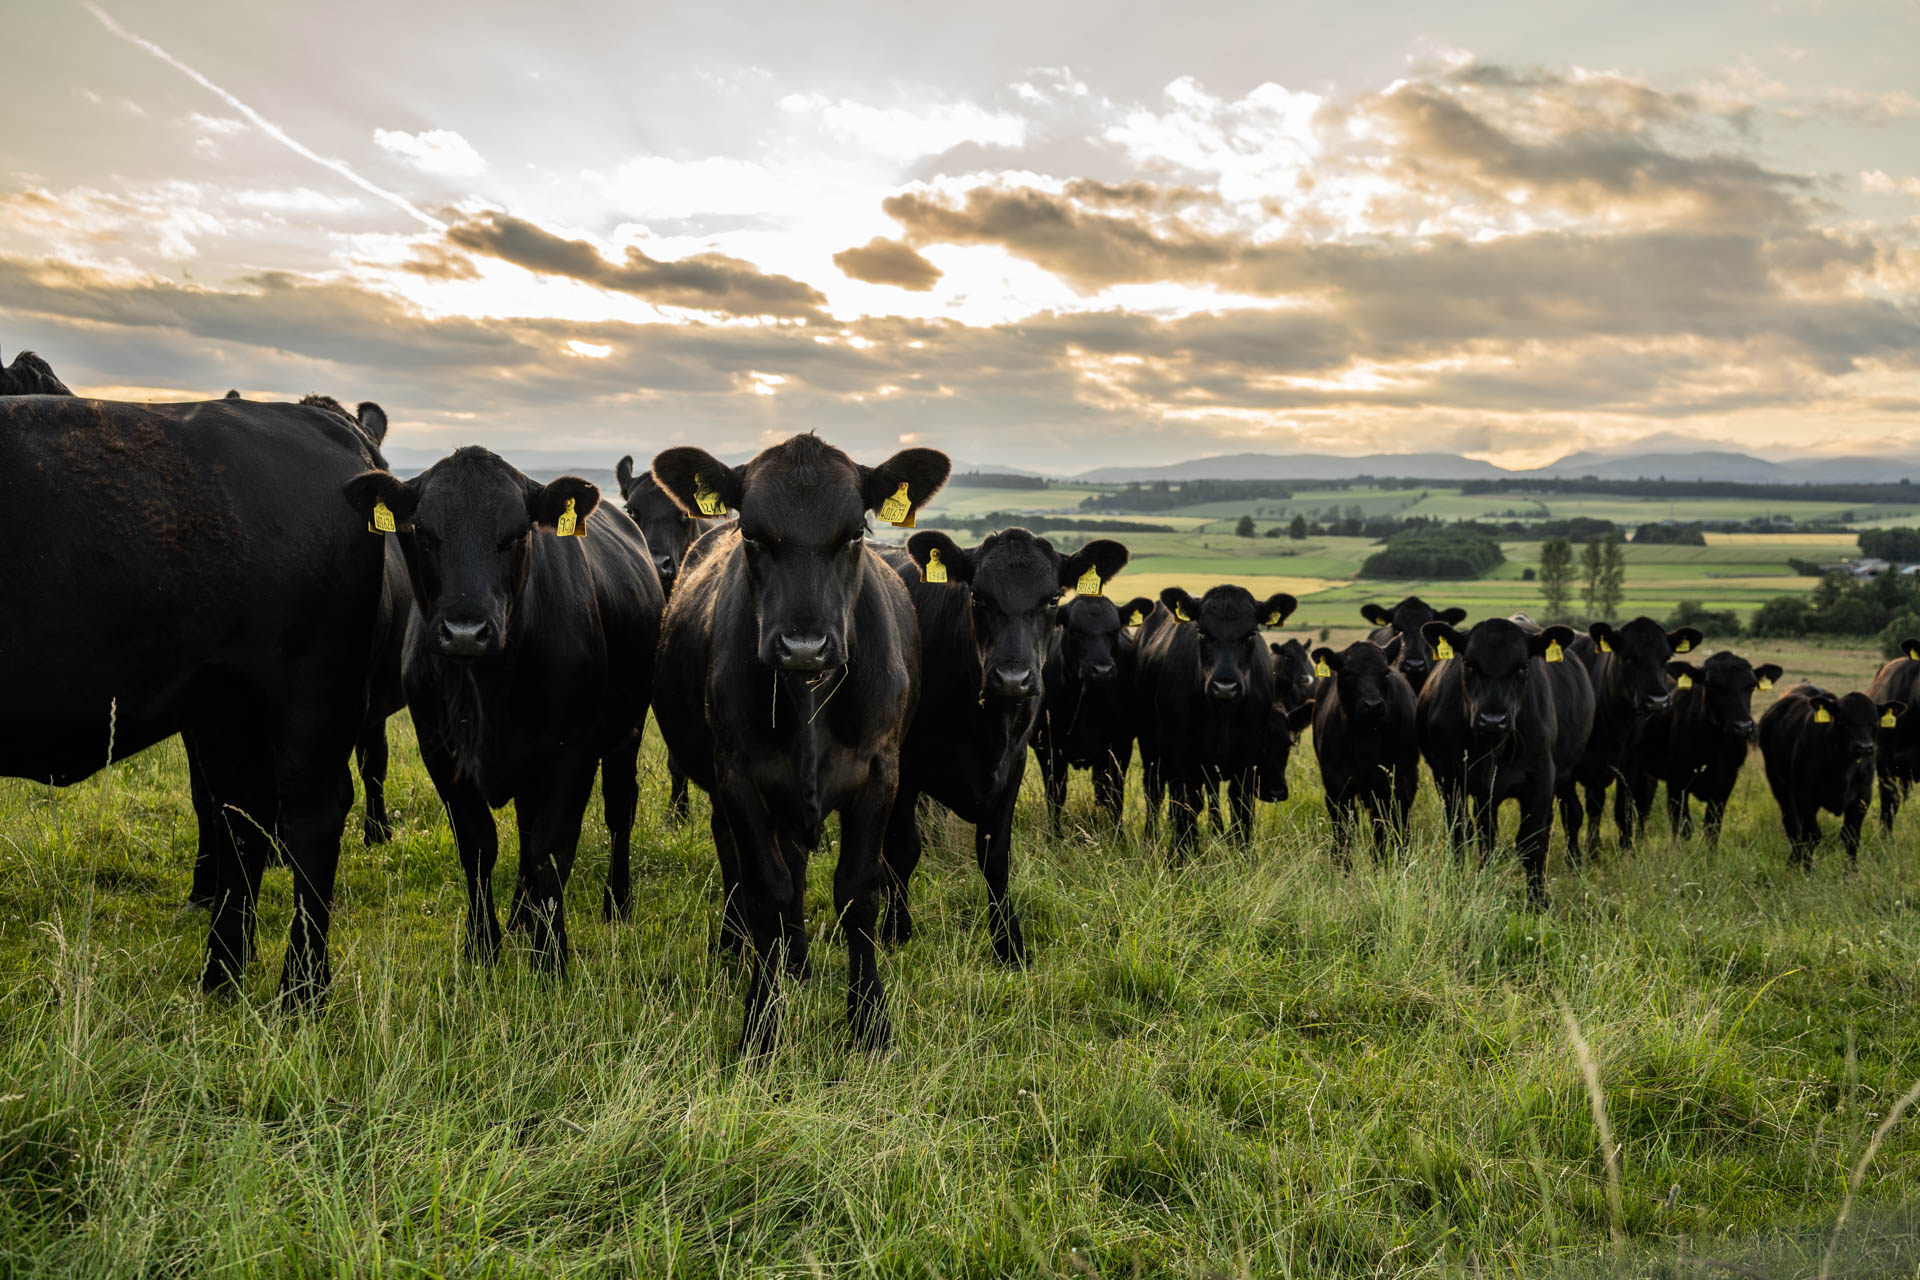 Cattle grazing in a field